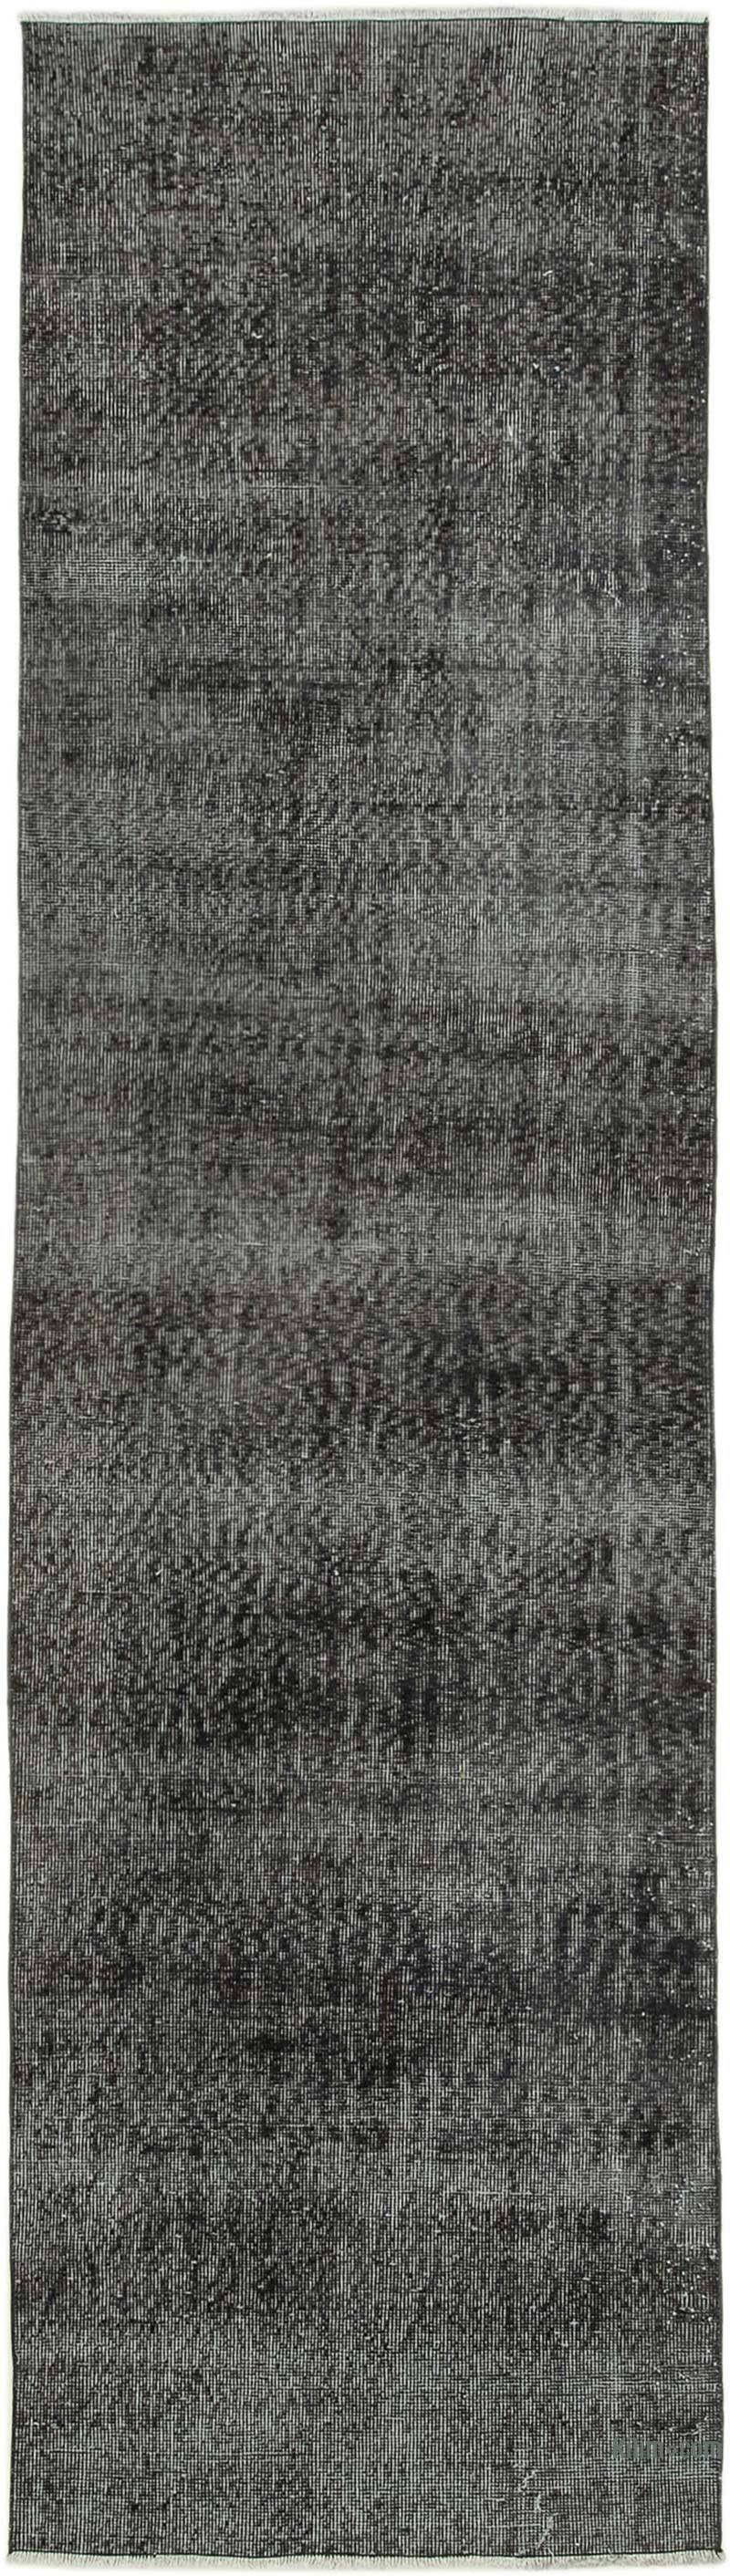 Siyah Boyalı El Dokuma Vintage Halı Yolluk - 92 cm x 328 cm - K0052263